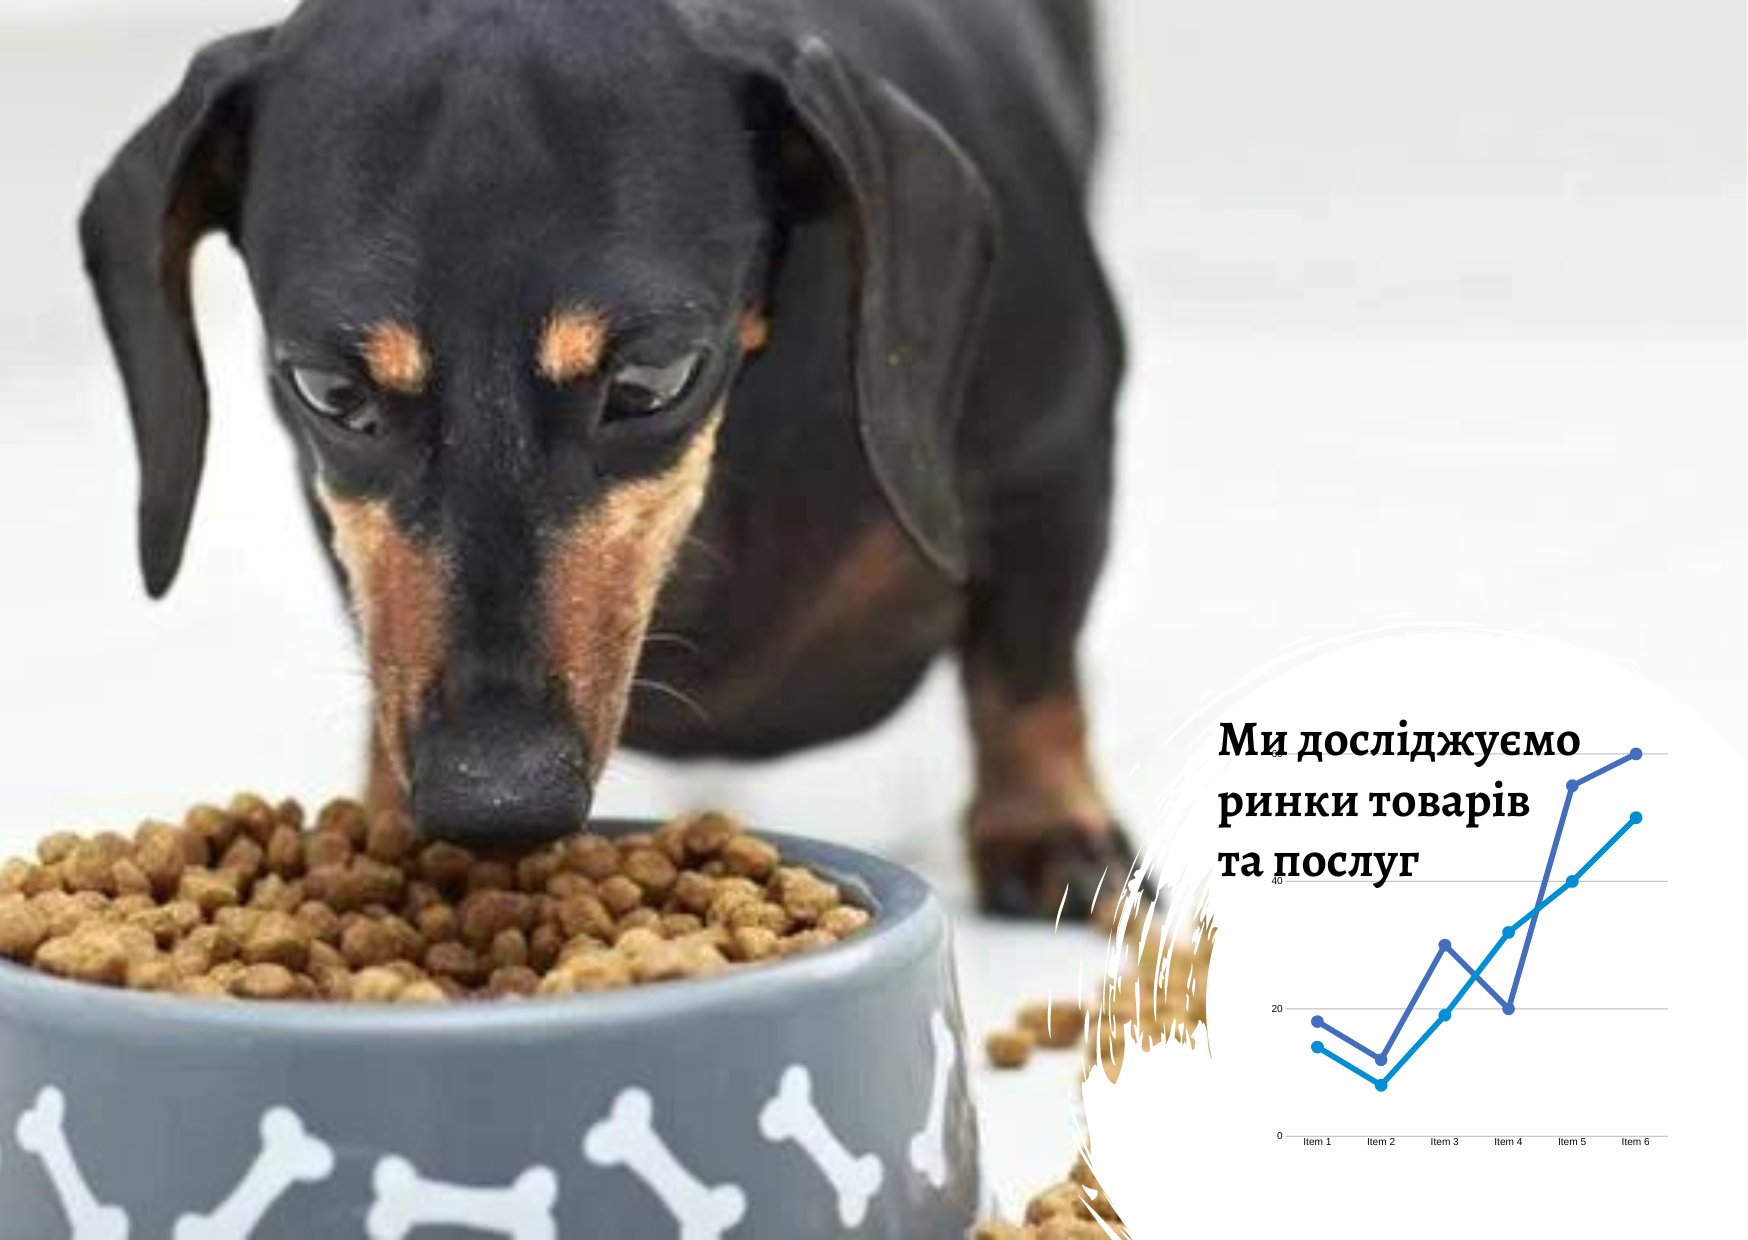 Рынок корма для собак в Украине: на любимцах не экономят 